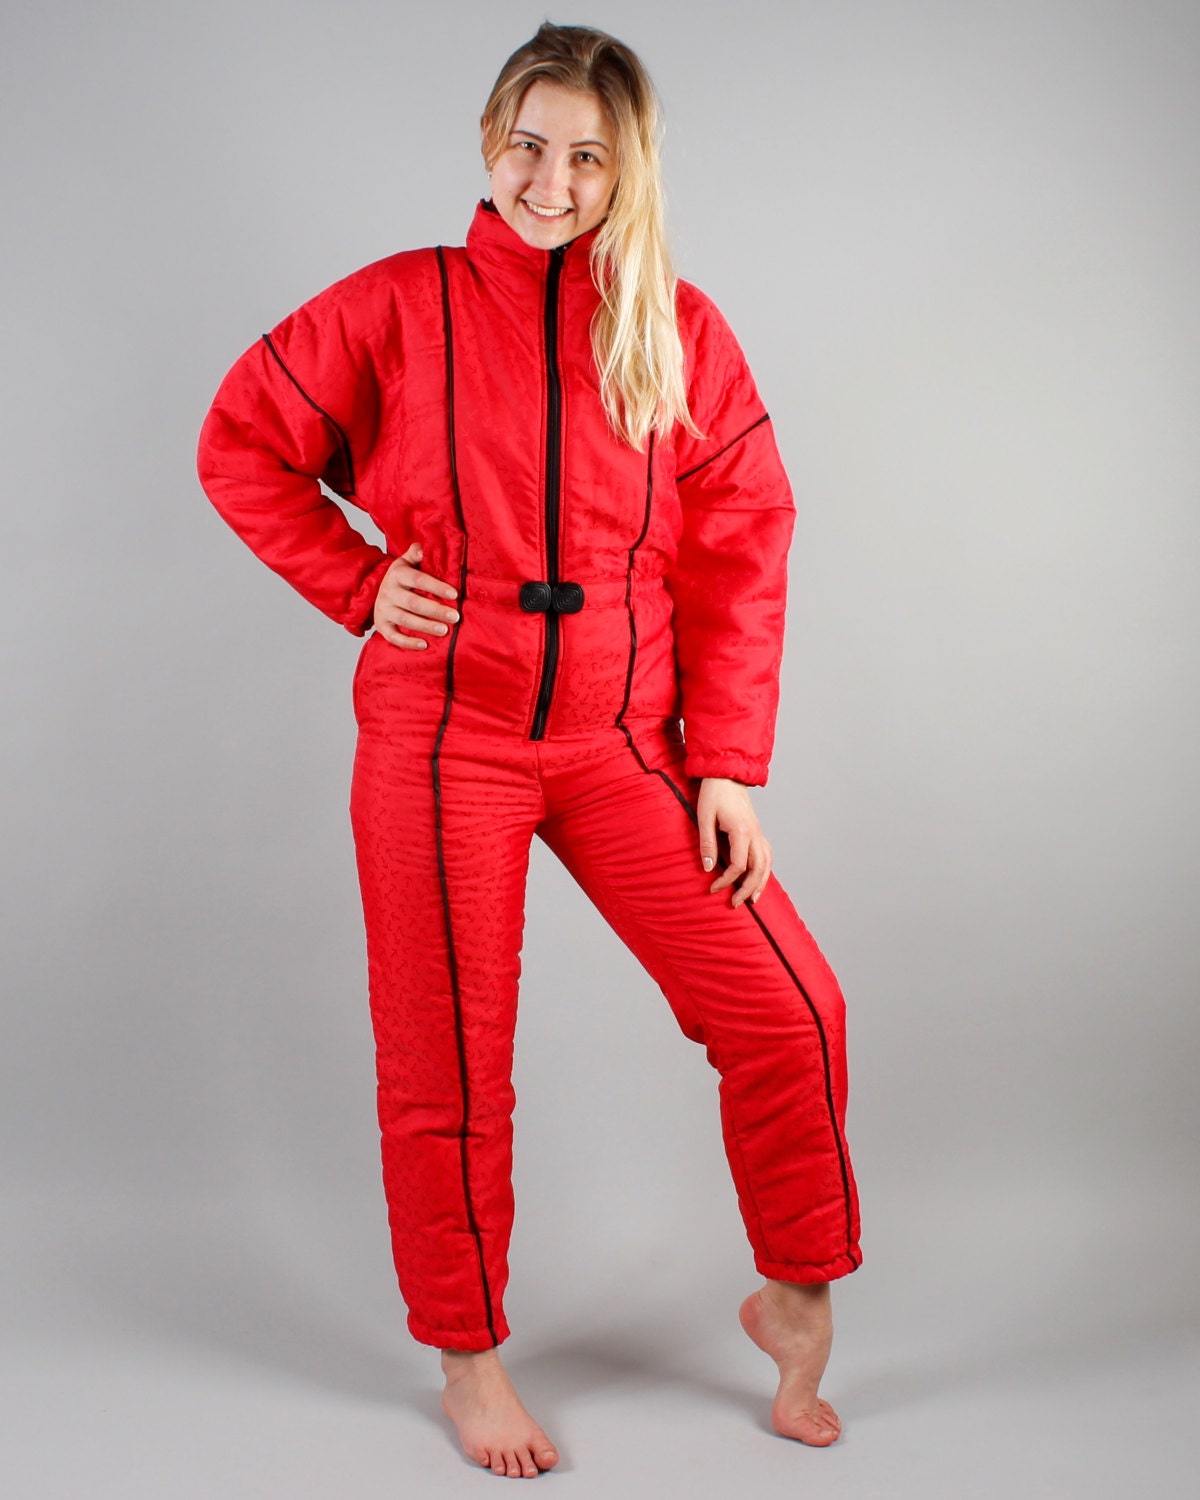 90' 80s Retro Ski Suit Salmon Red Snowsuit Ski Suit All in | Etsy